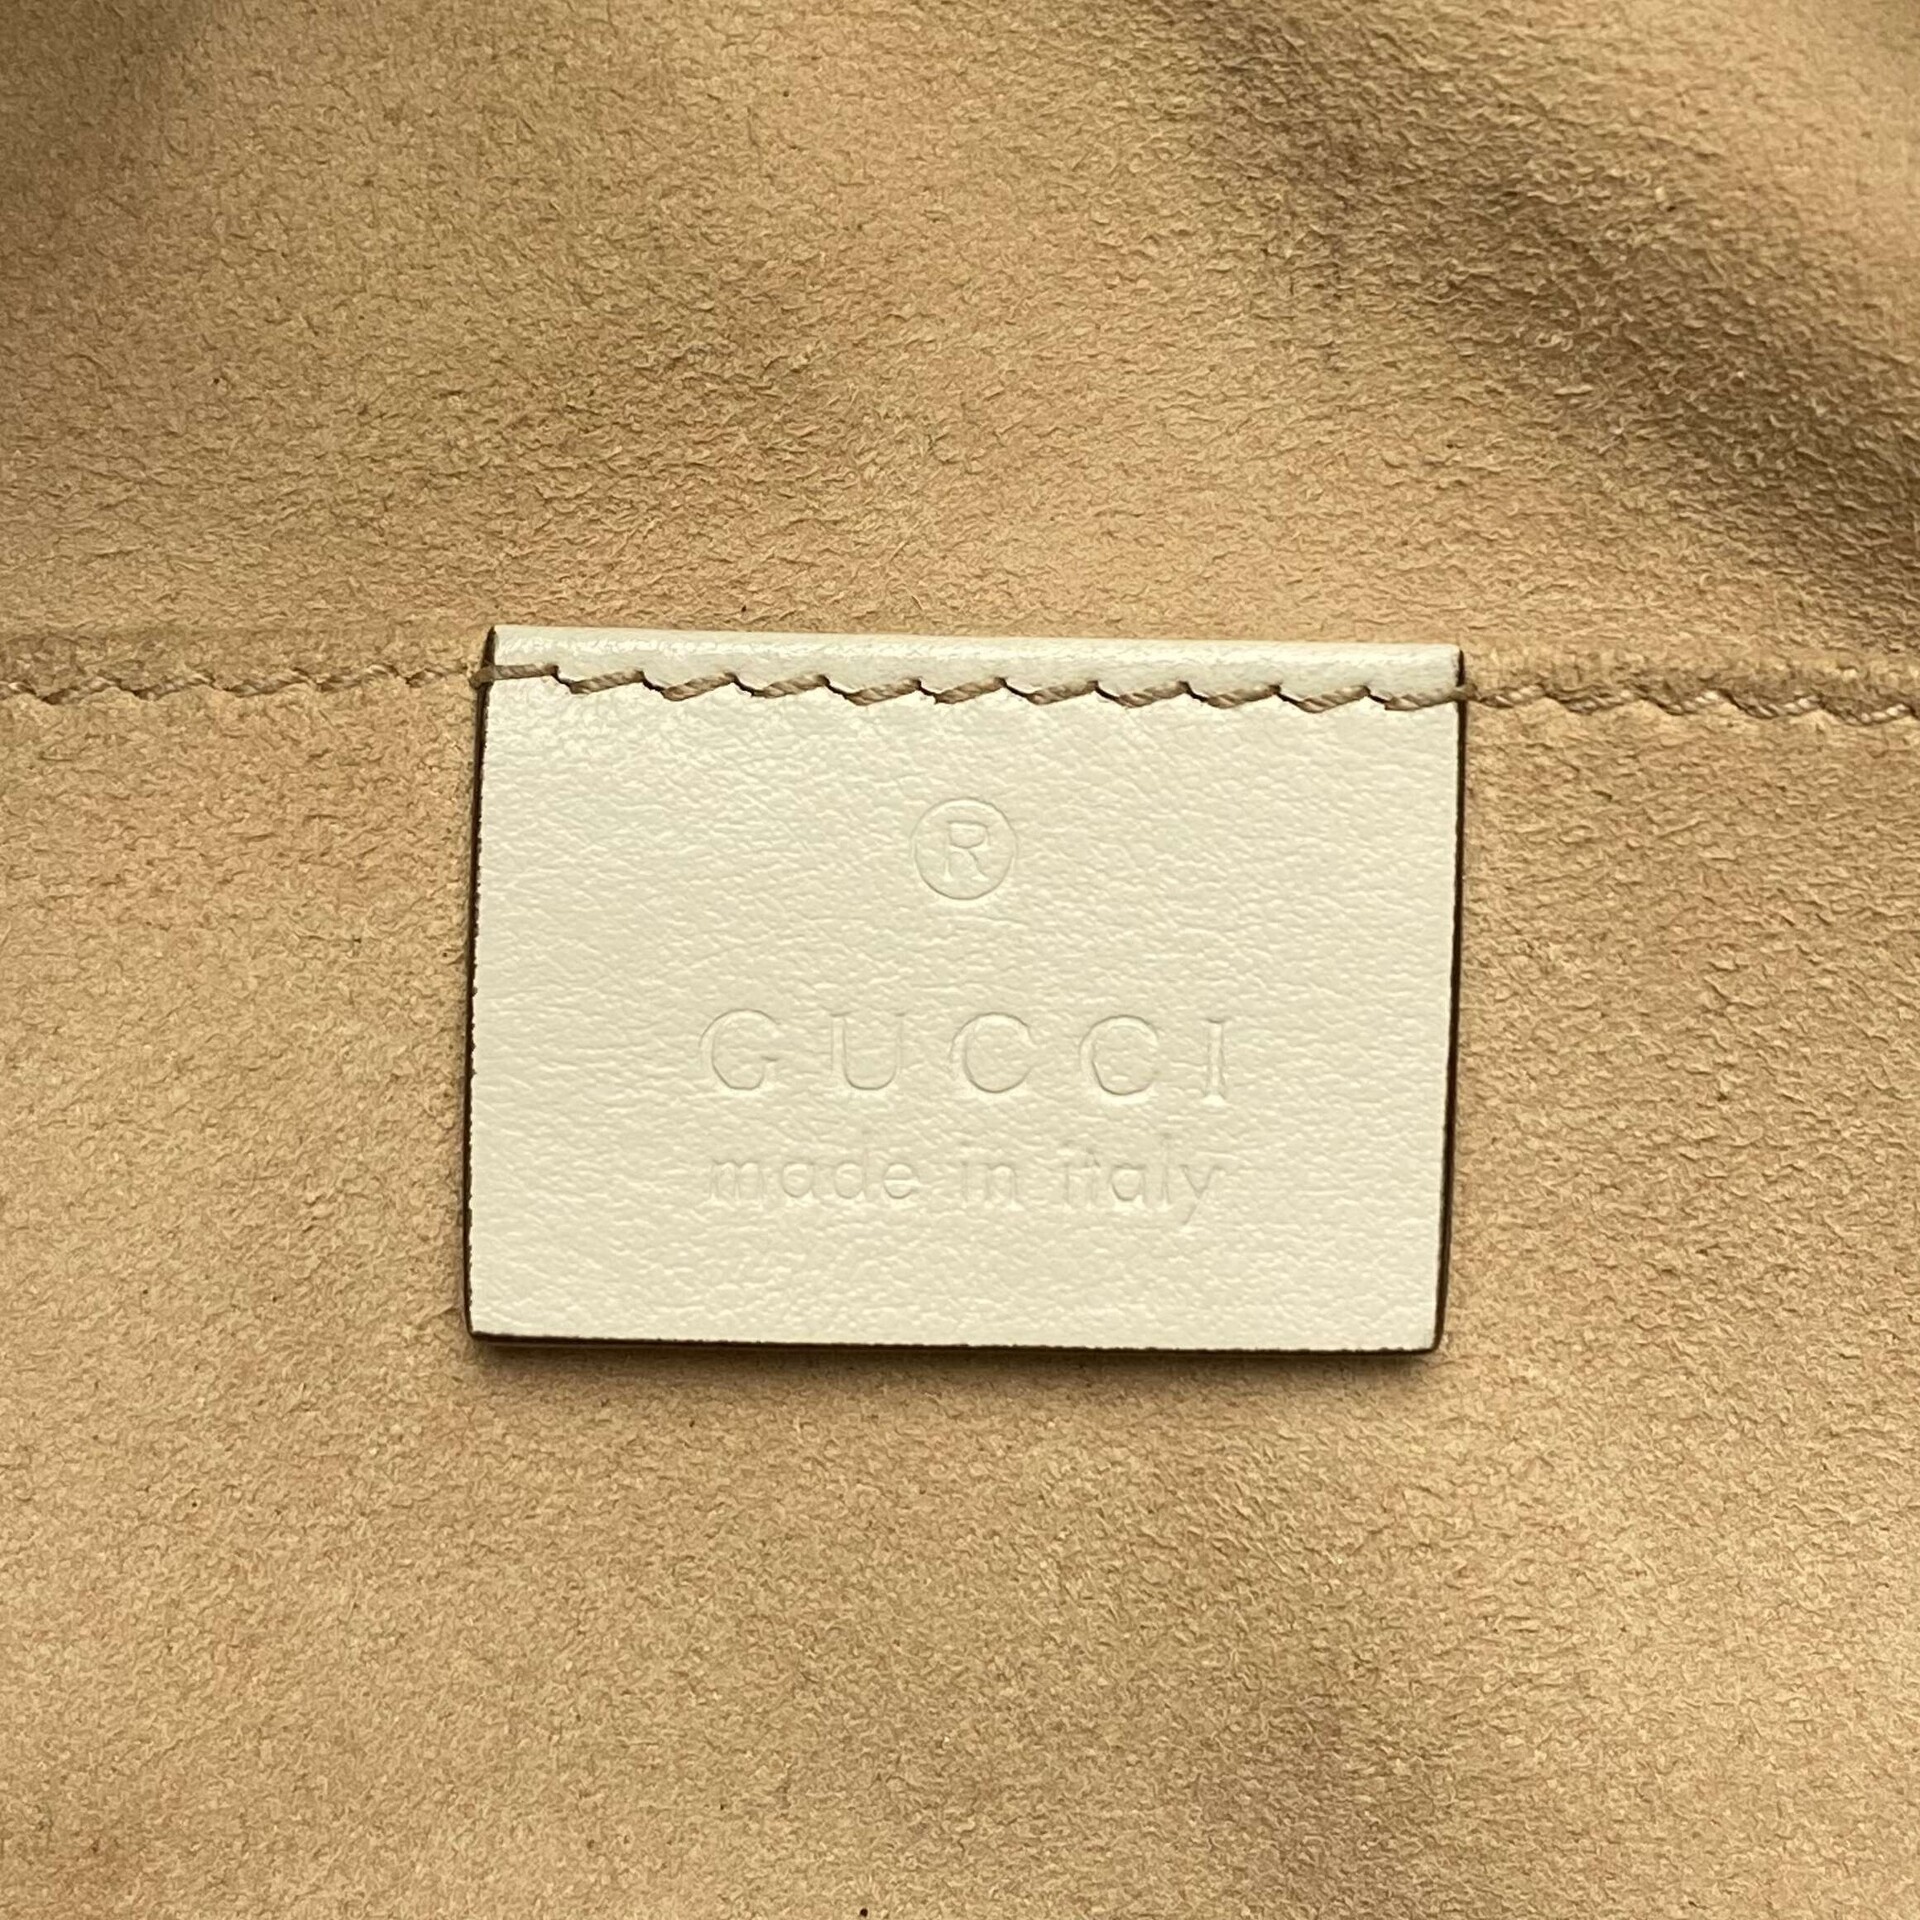 Bolsa Gucci Marmont Off White